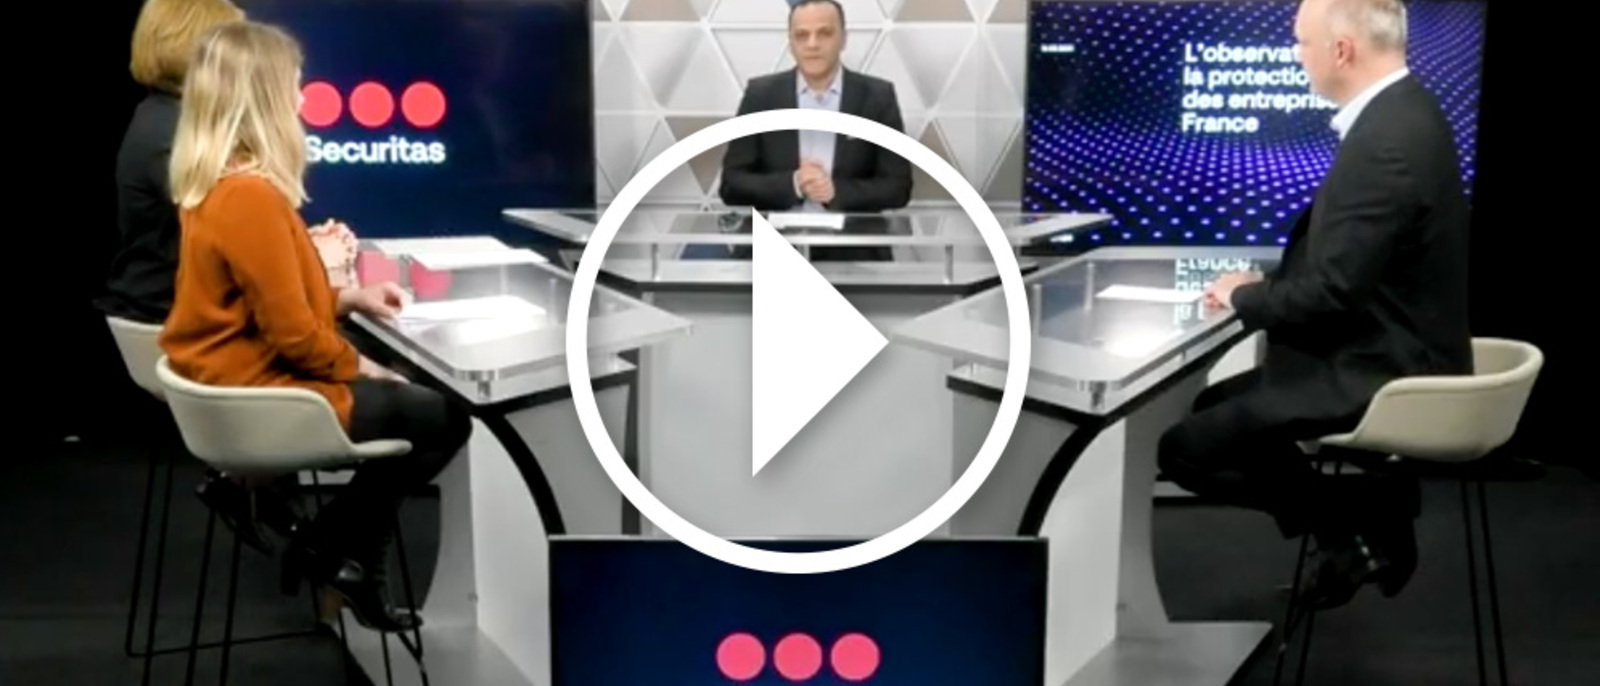 Vidéo de l'Observatoire de la protection des entreprises en France